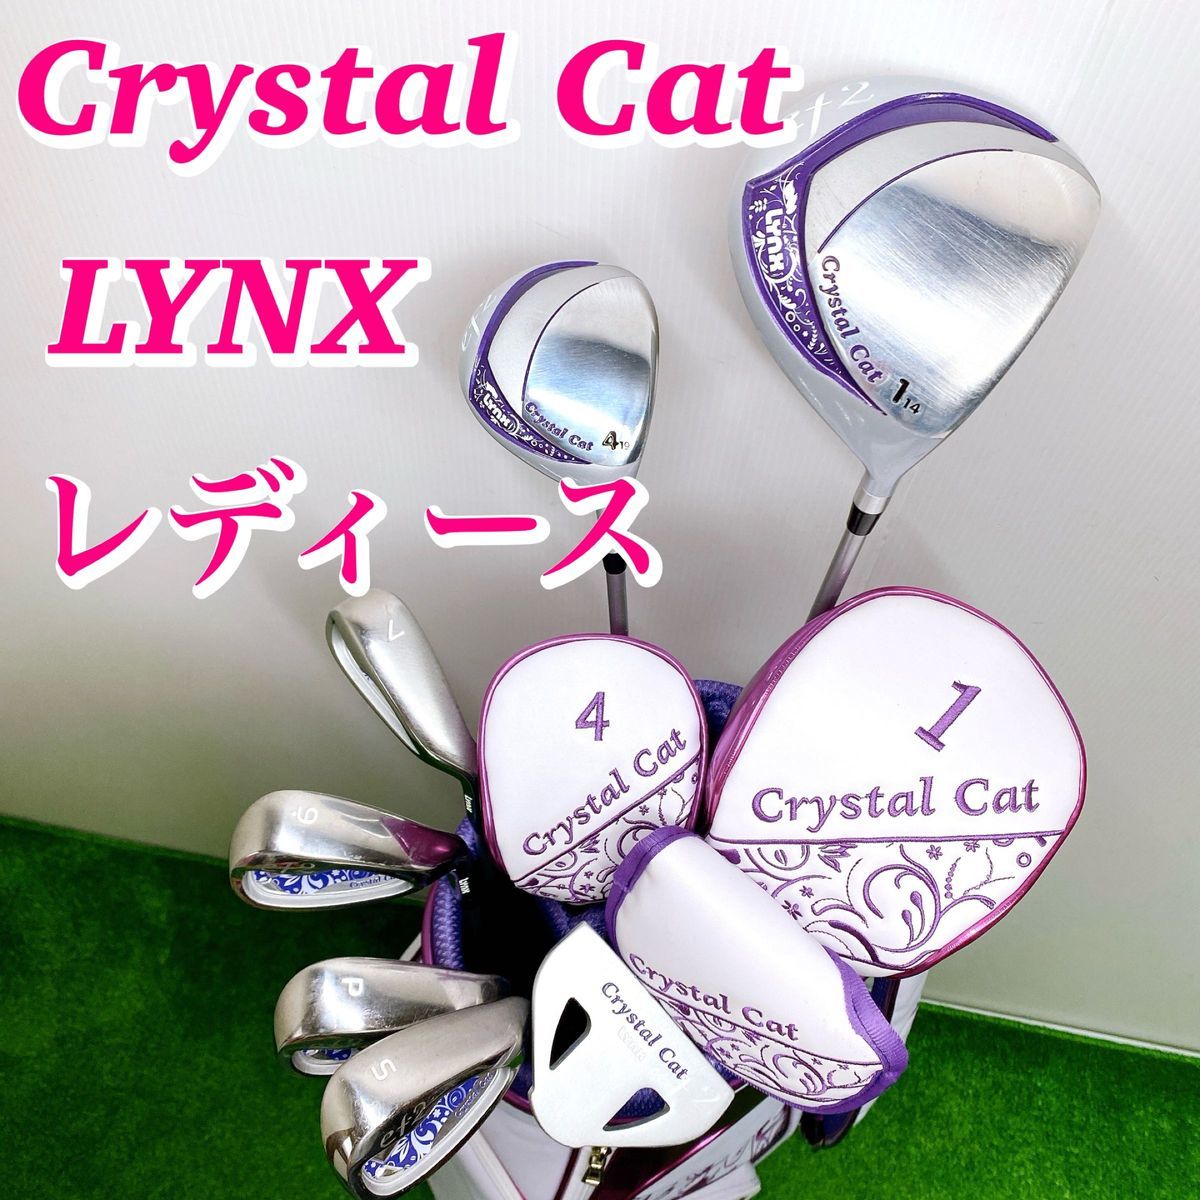 【初心者推奨】リンクス クリスタルキャット レディース ゴルフクラブセット Crystal Cat ドライバー ウッド アイアン